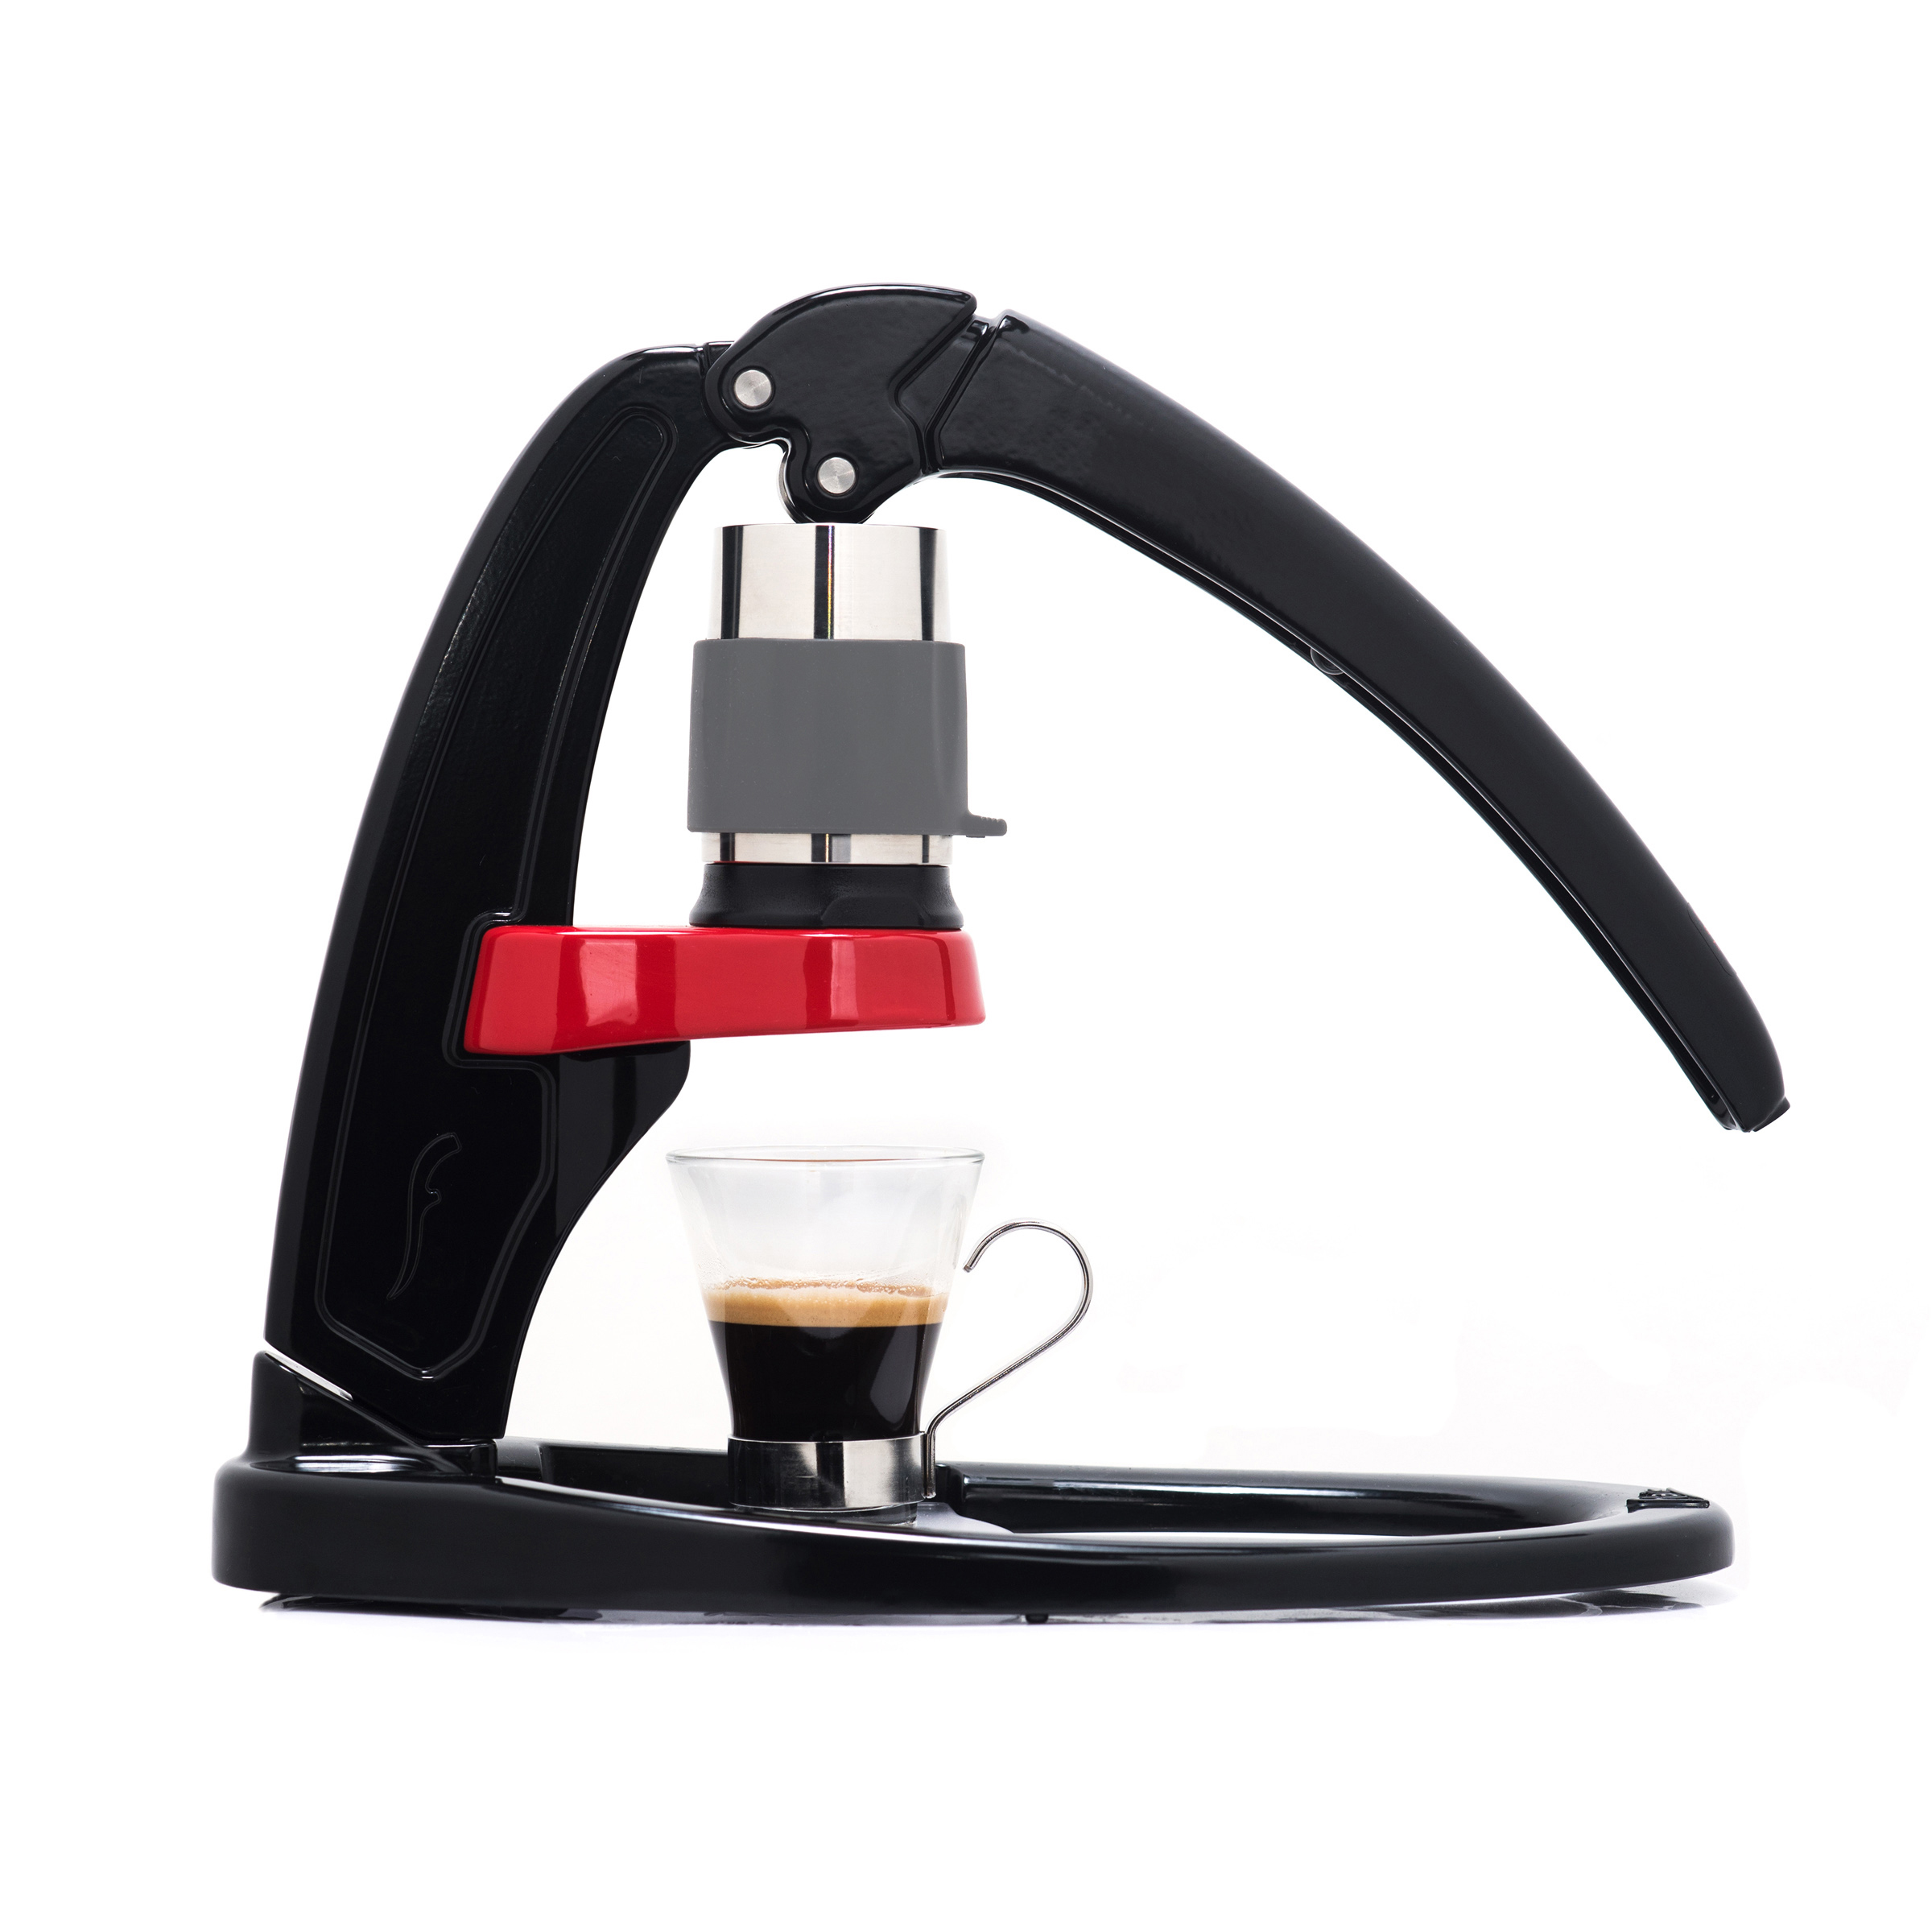 Flair Manual Espresso Maker